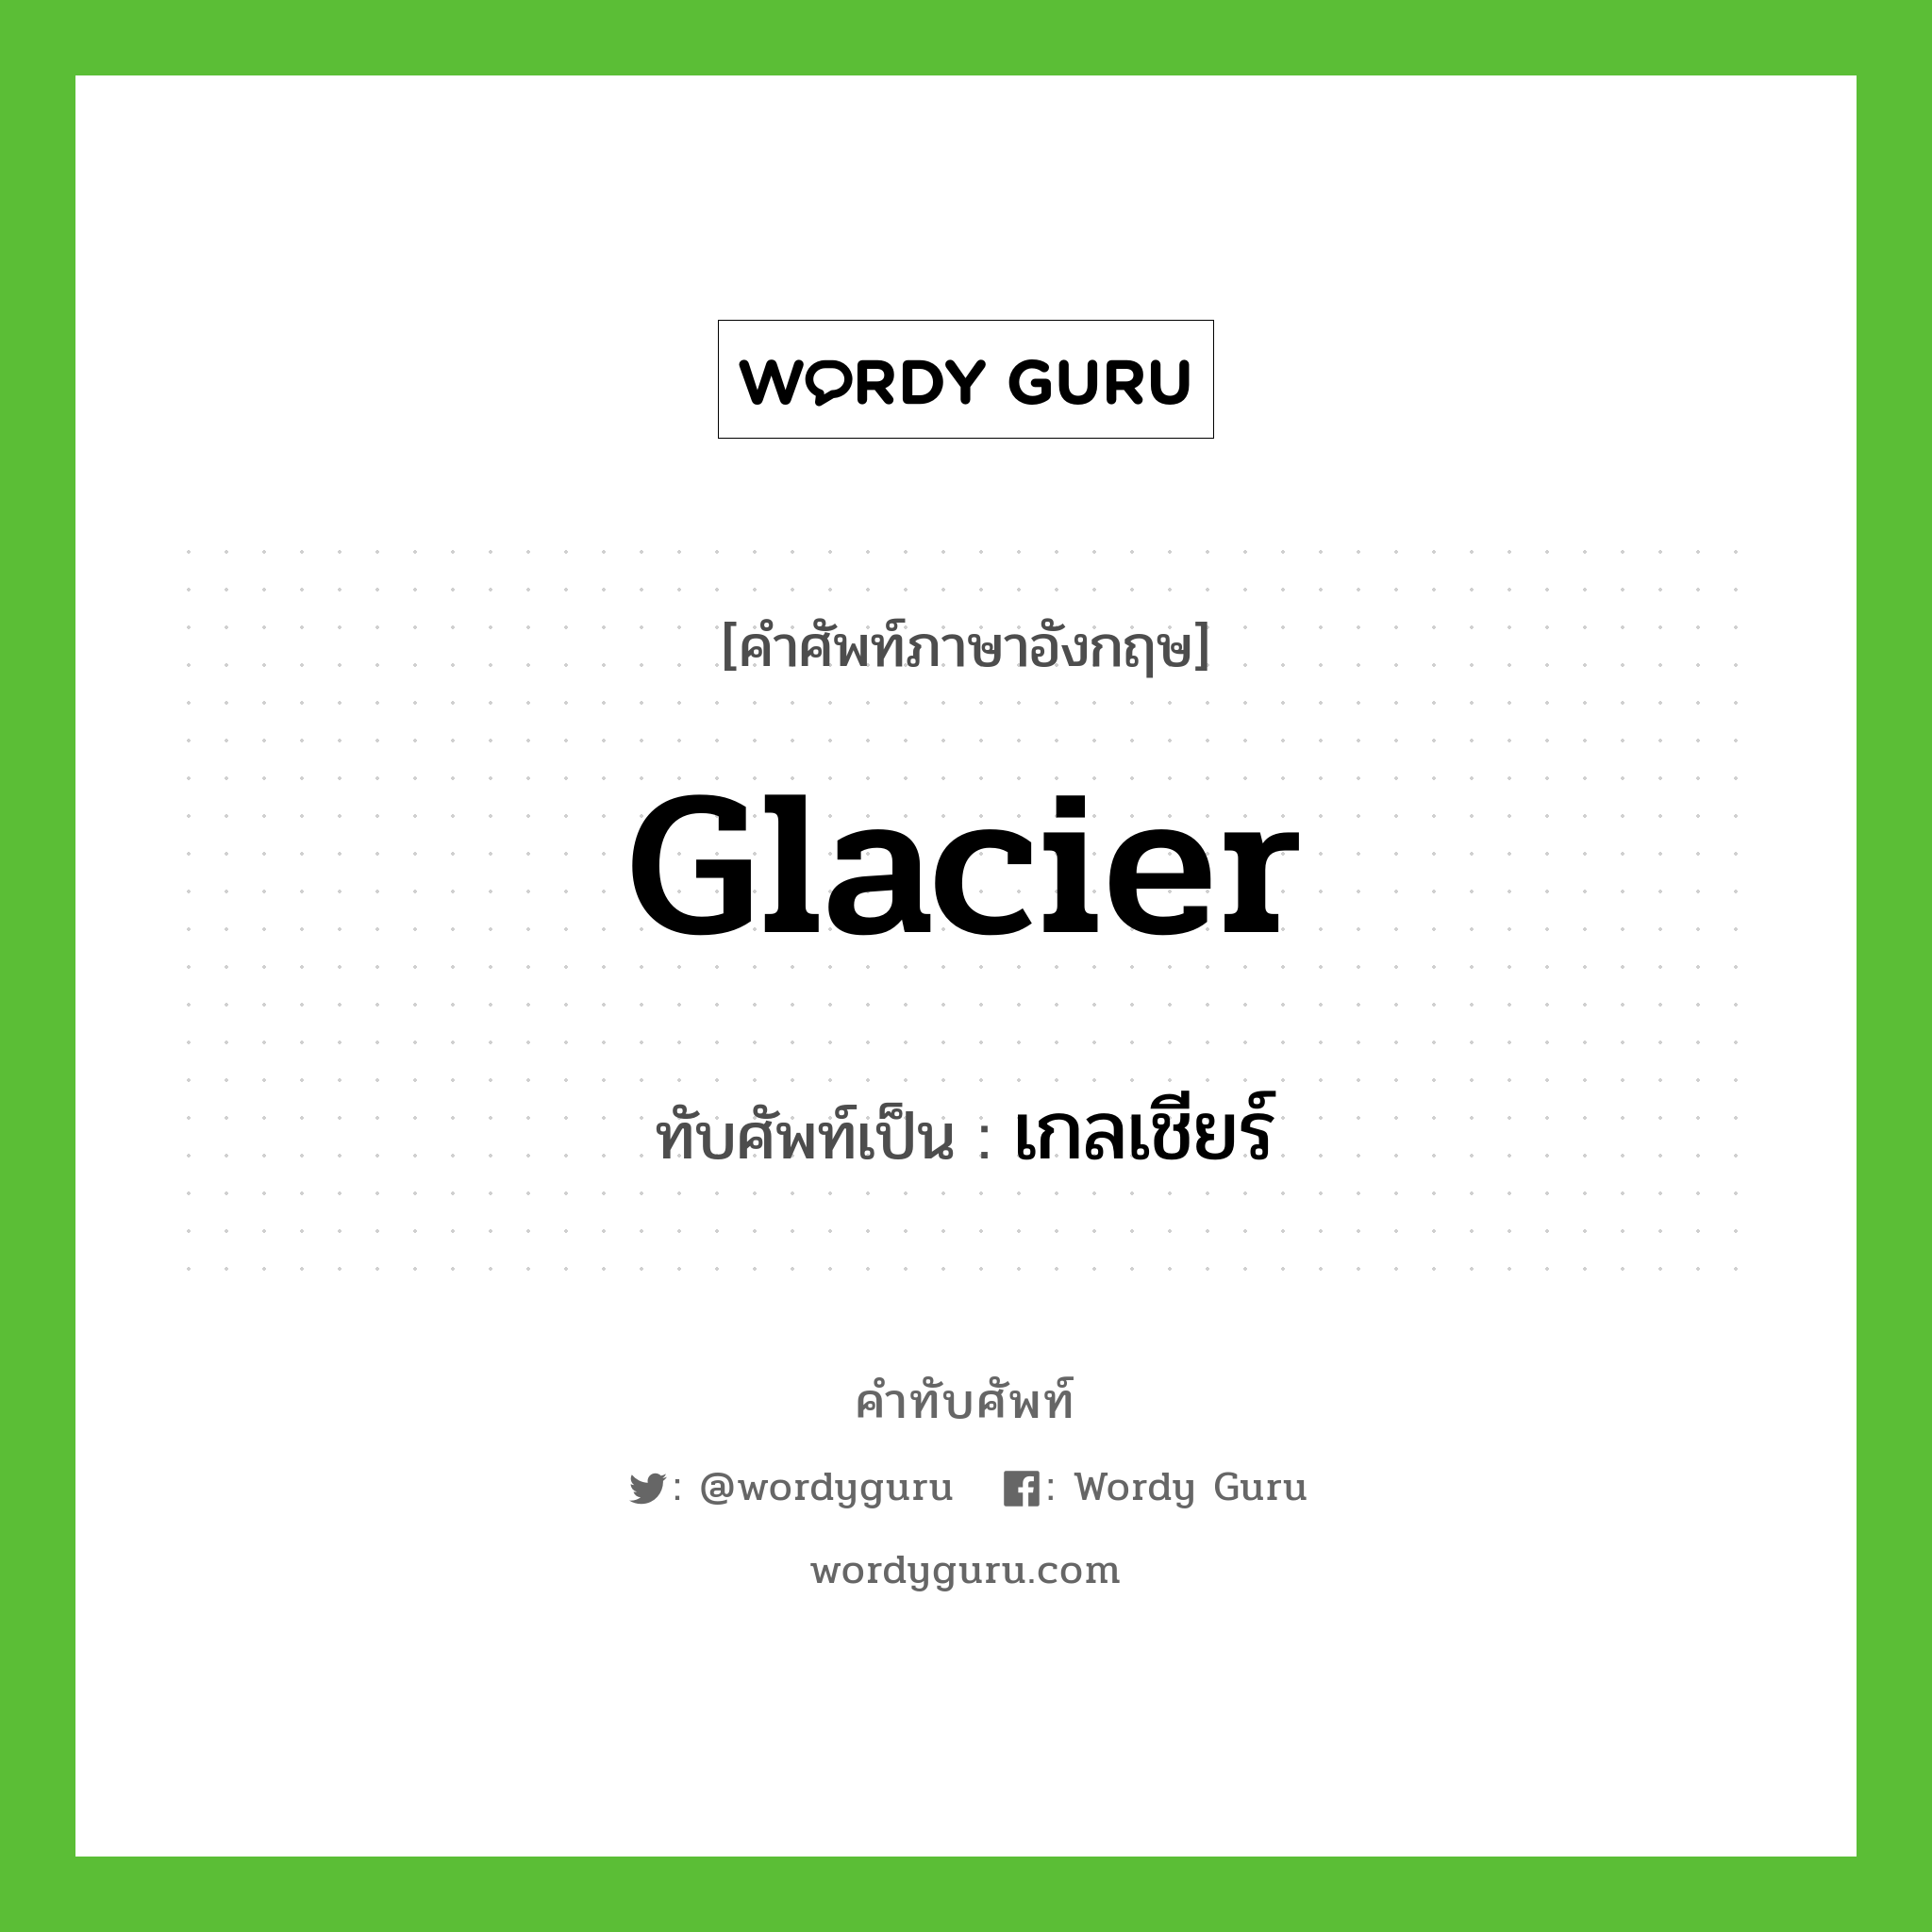 glacier เขียนเป็นคำไทยว่าอะไร?, คำศัพท์ภาษาอังกฤษ glacier ทับศัพท์เป็น เกลเชียร์